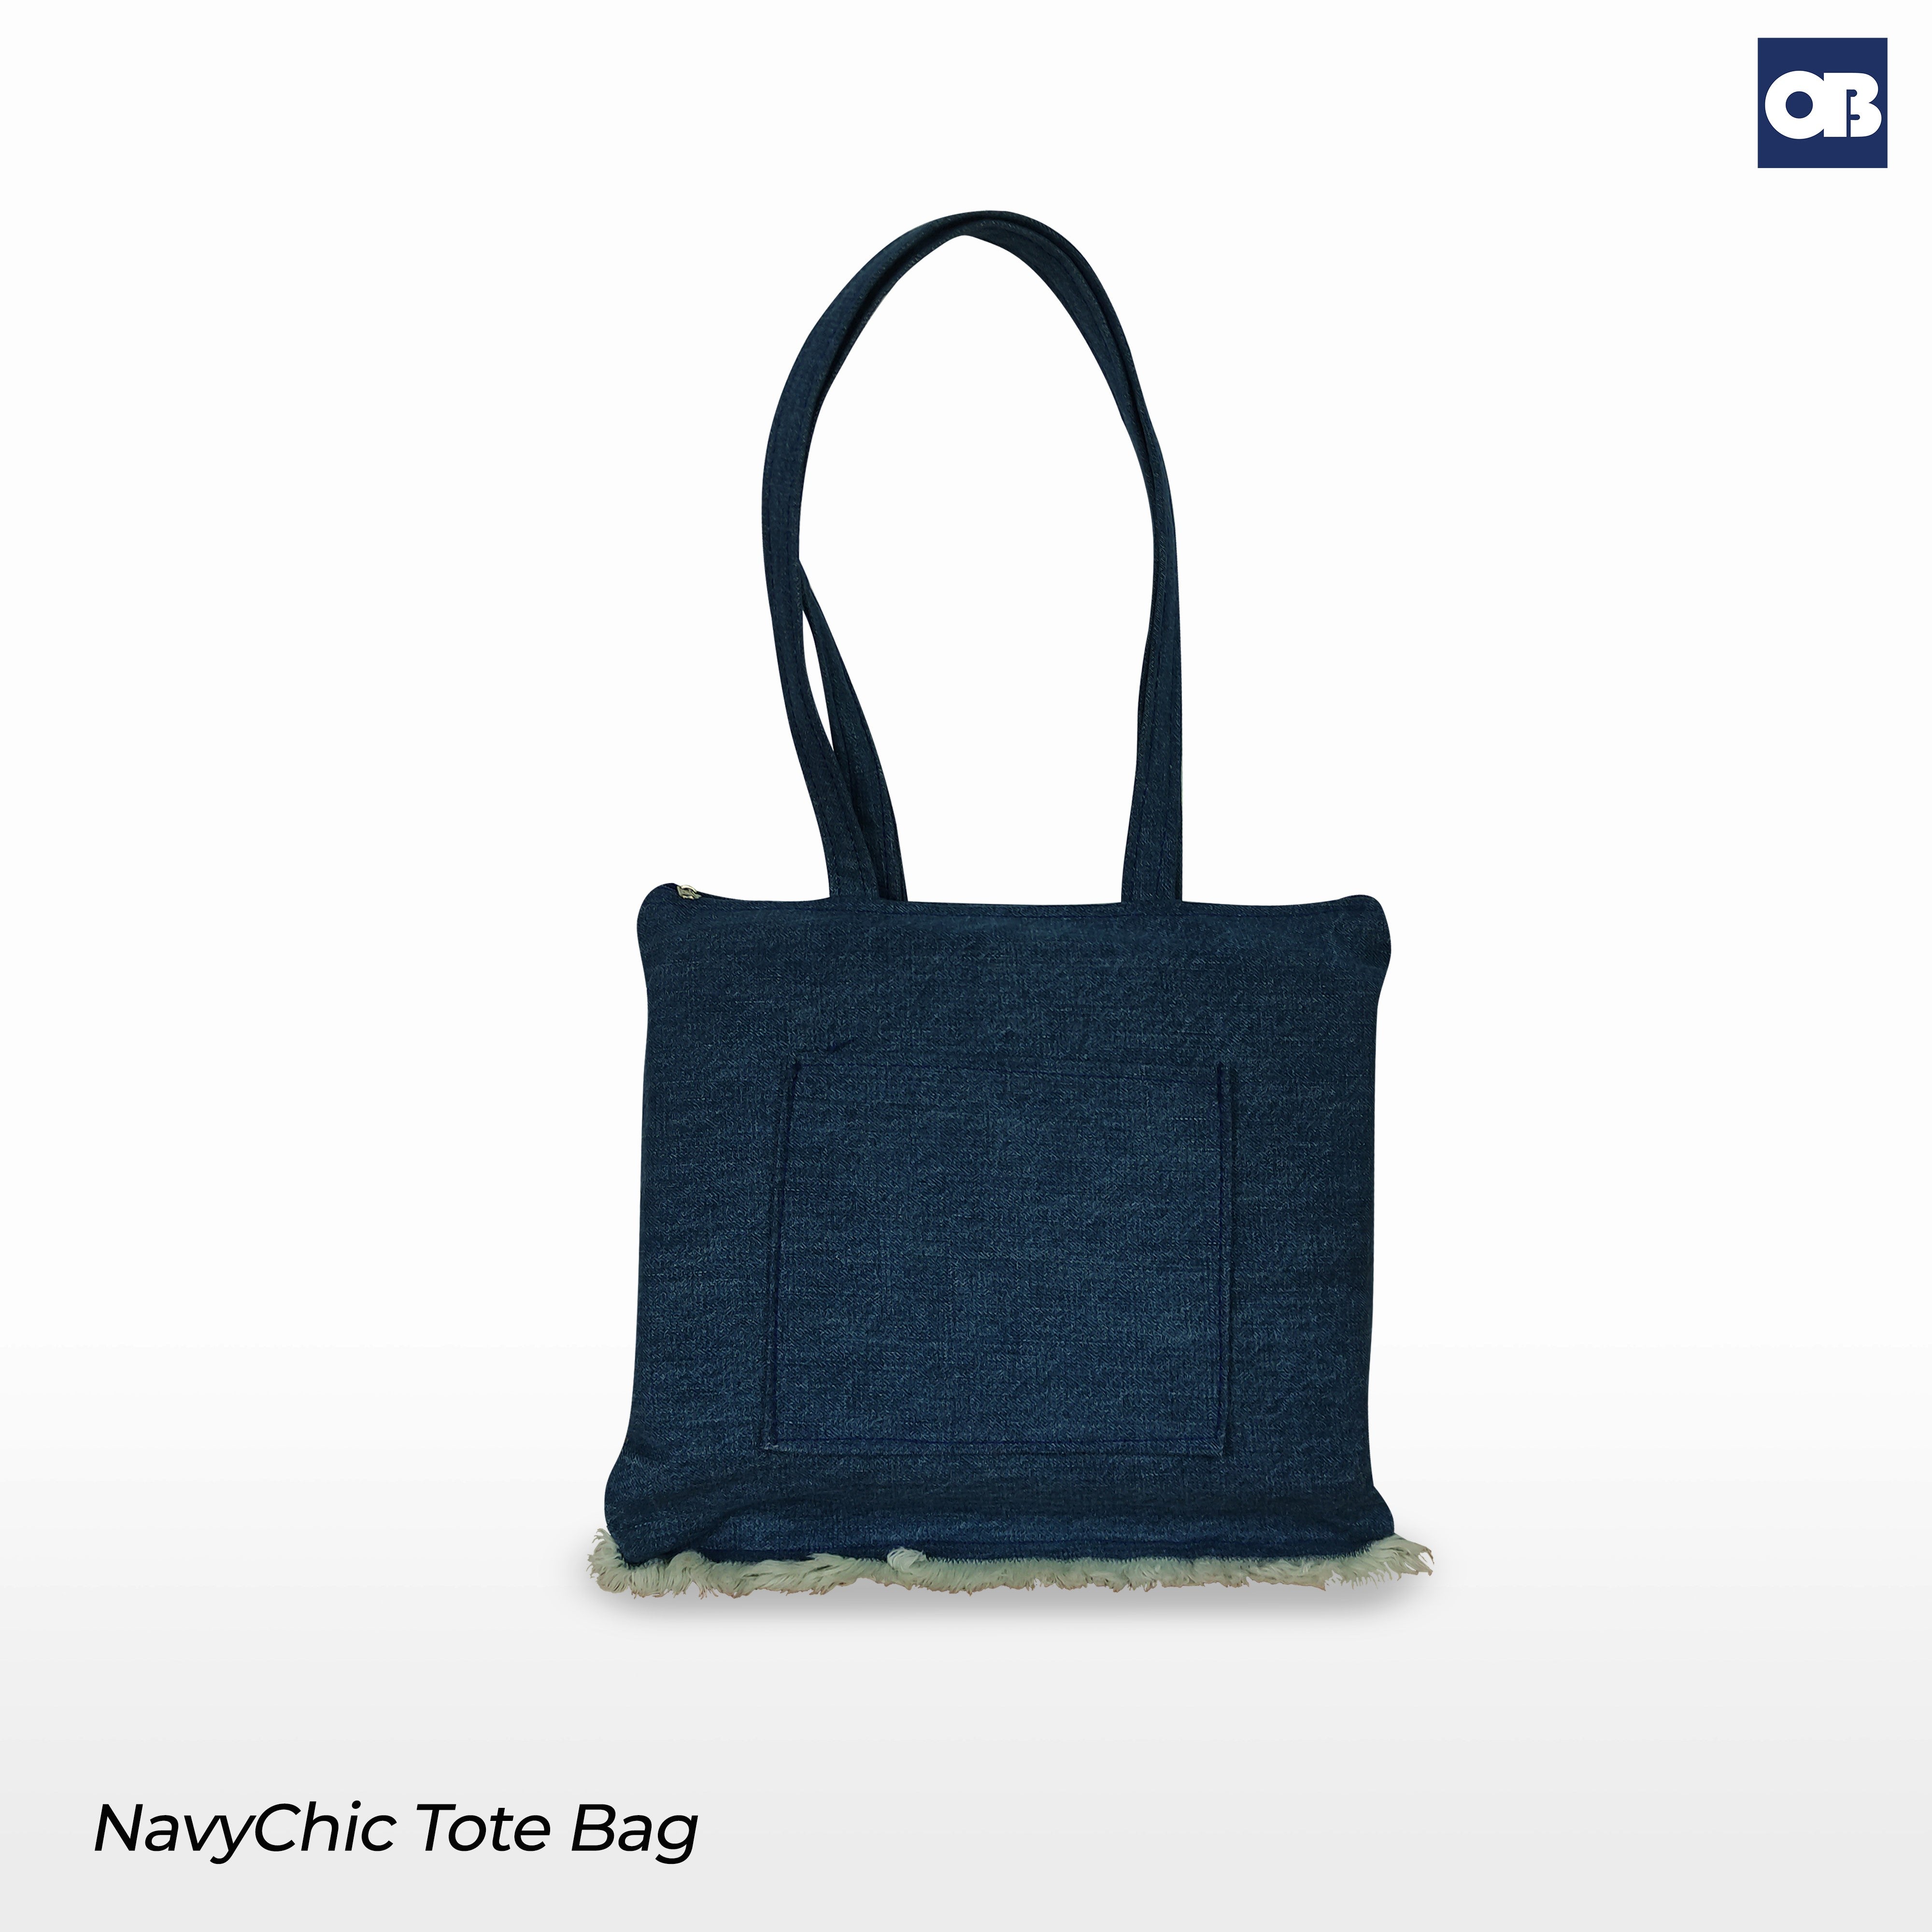 OB NavyChic Tote Bag